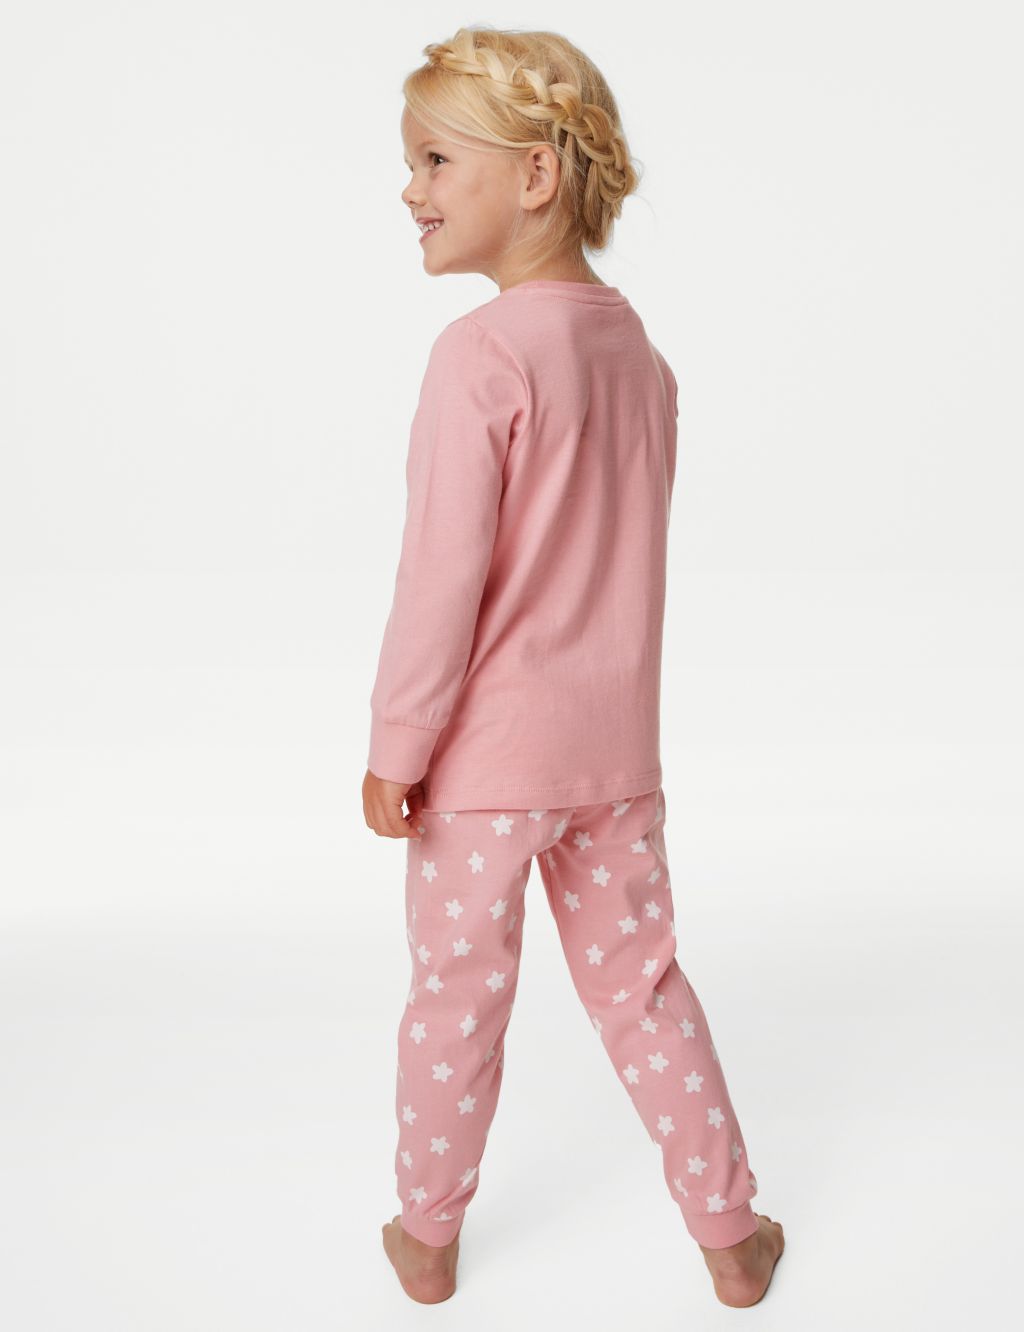 Bluey™ Pyjamas (1-7 Yrs) image 3